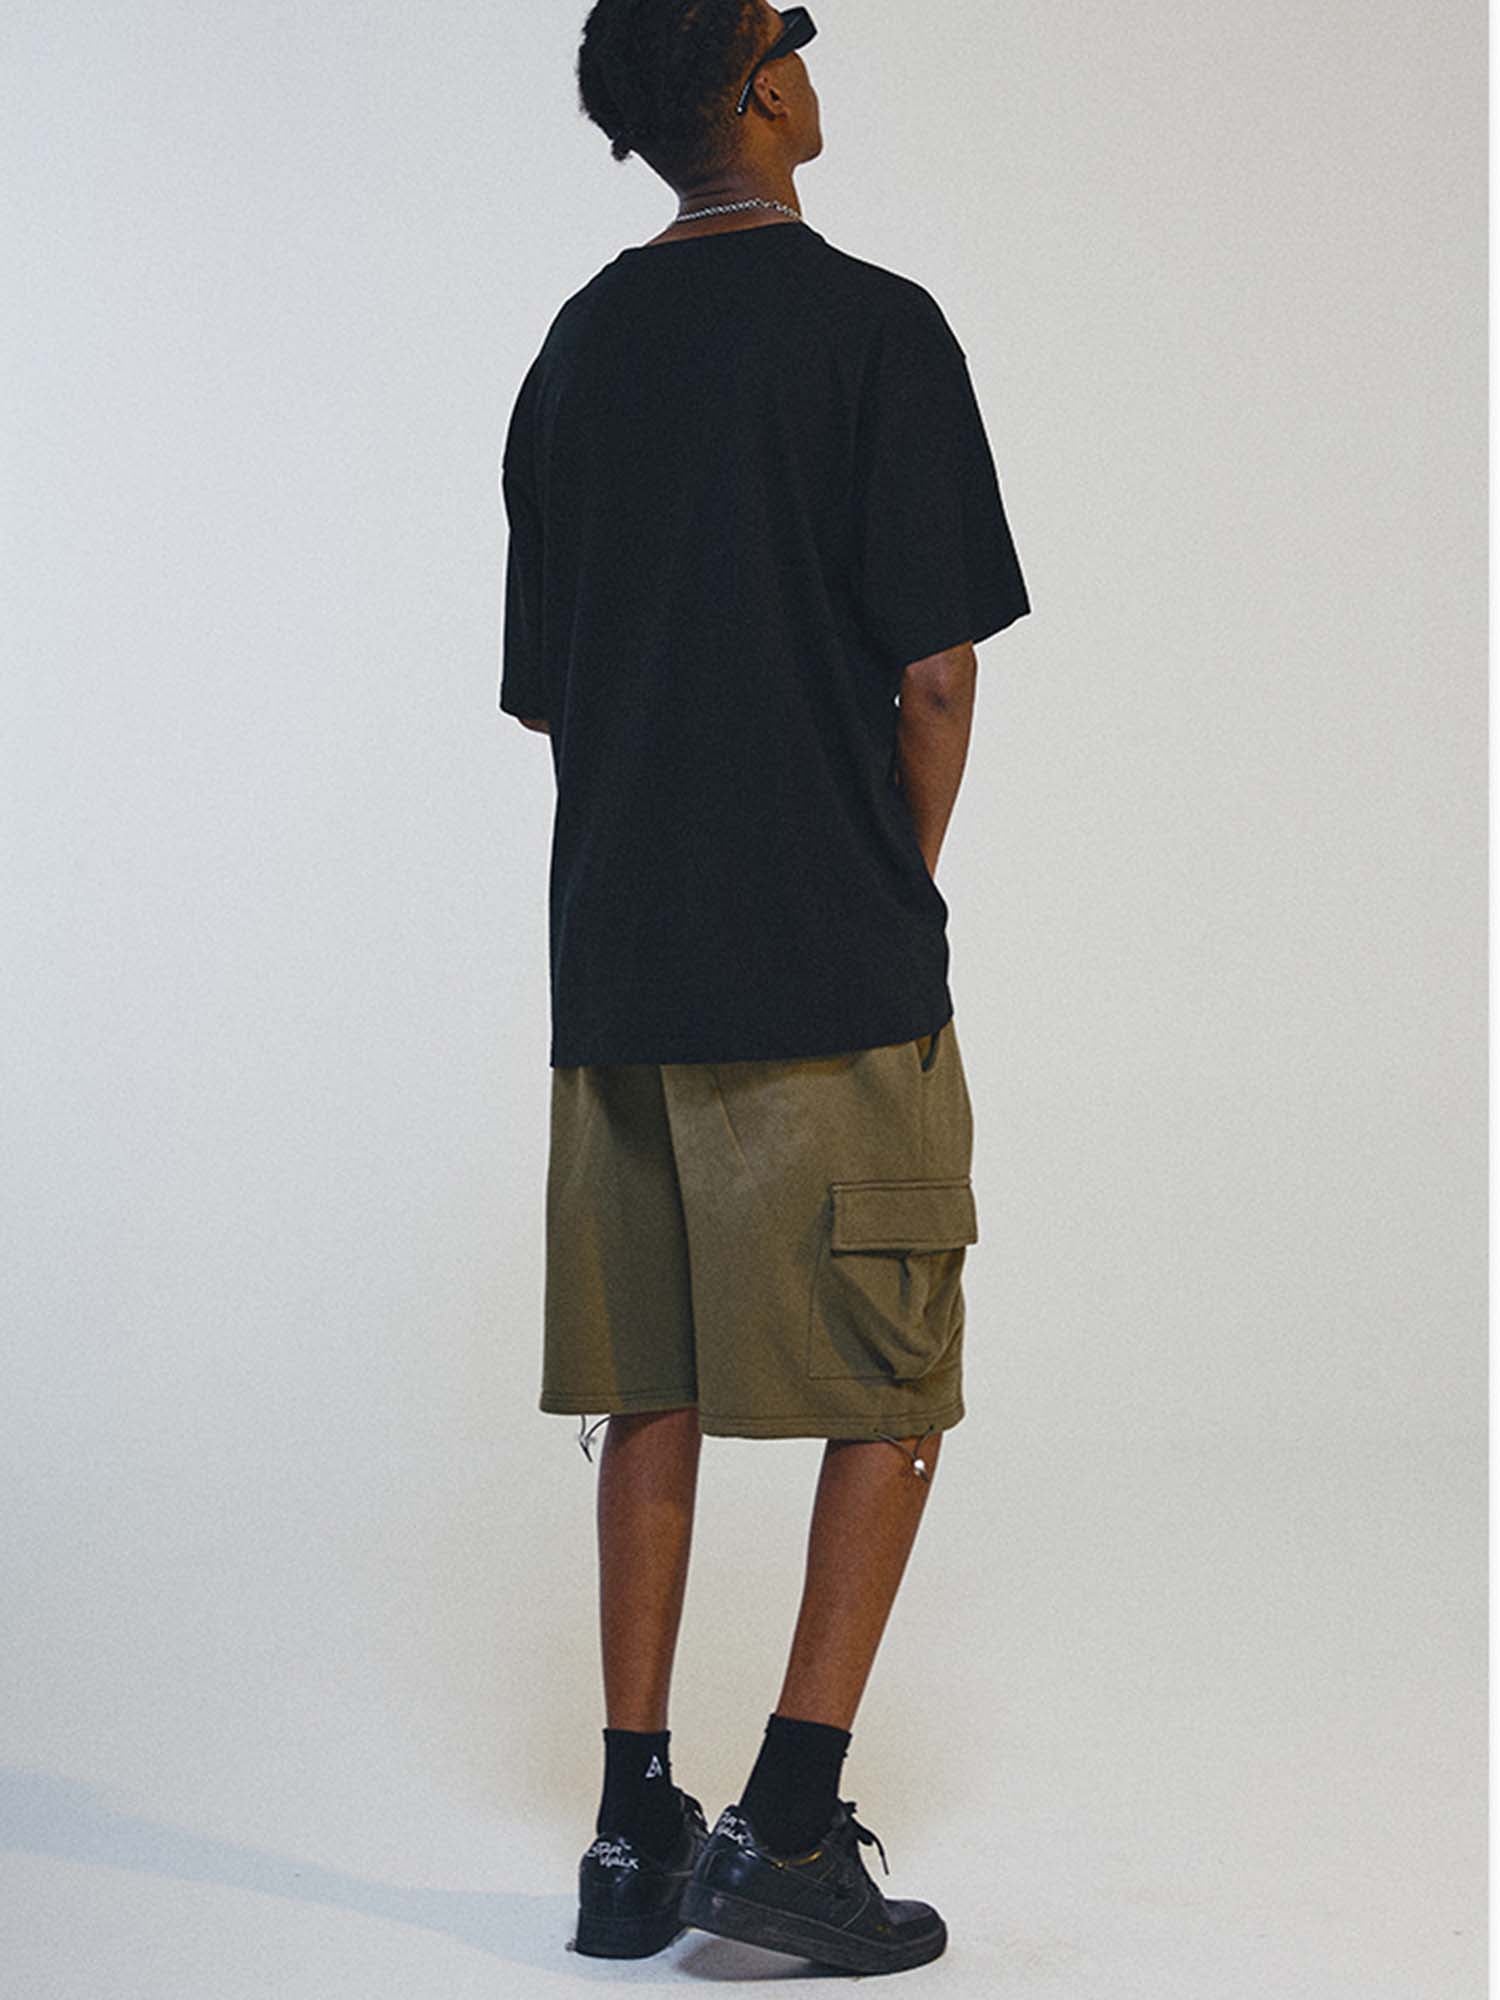 Justnotag HipHop Rap T-shirt à manches courtes en coton imprimé